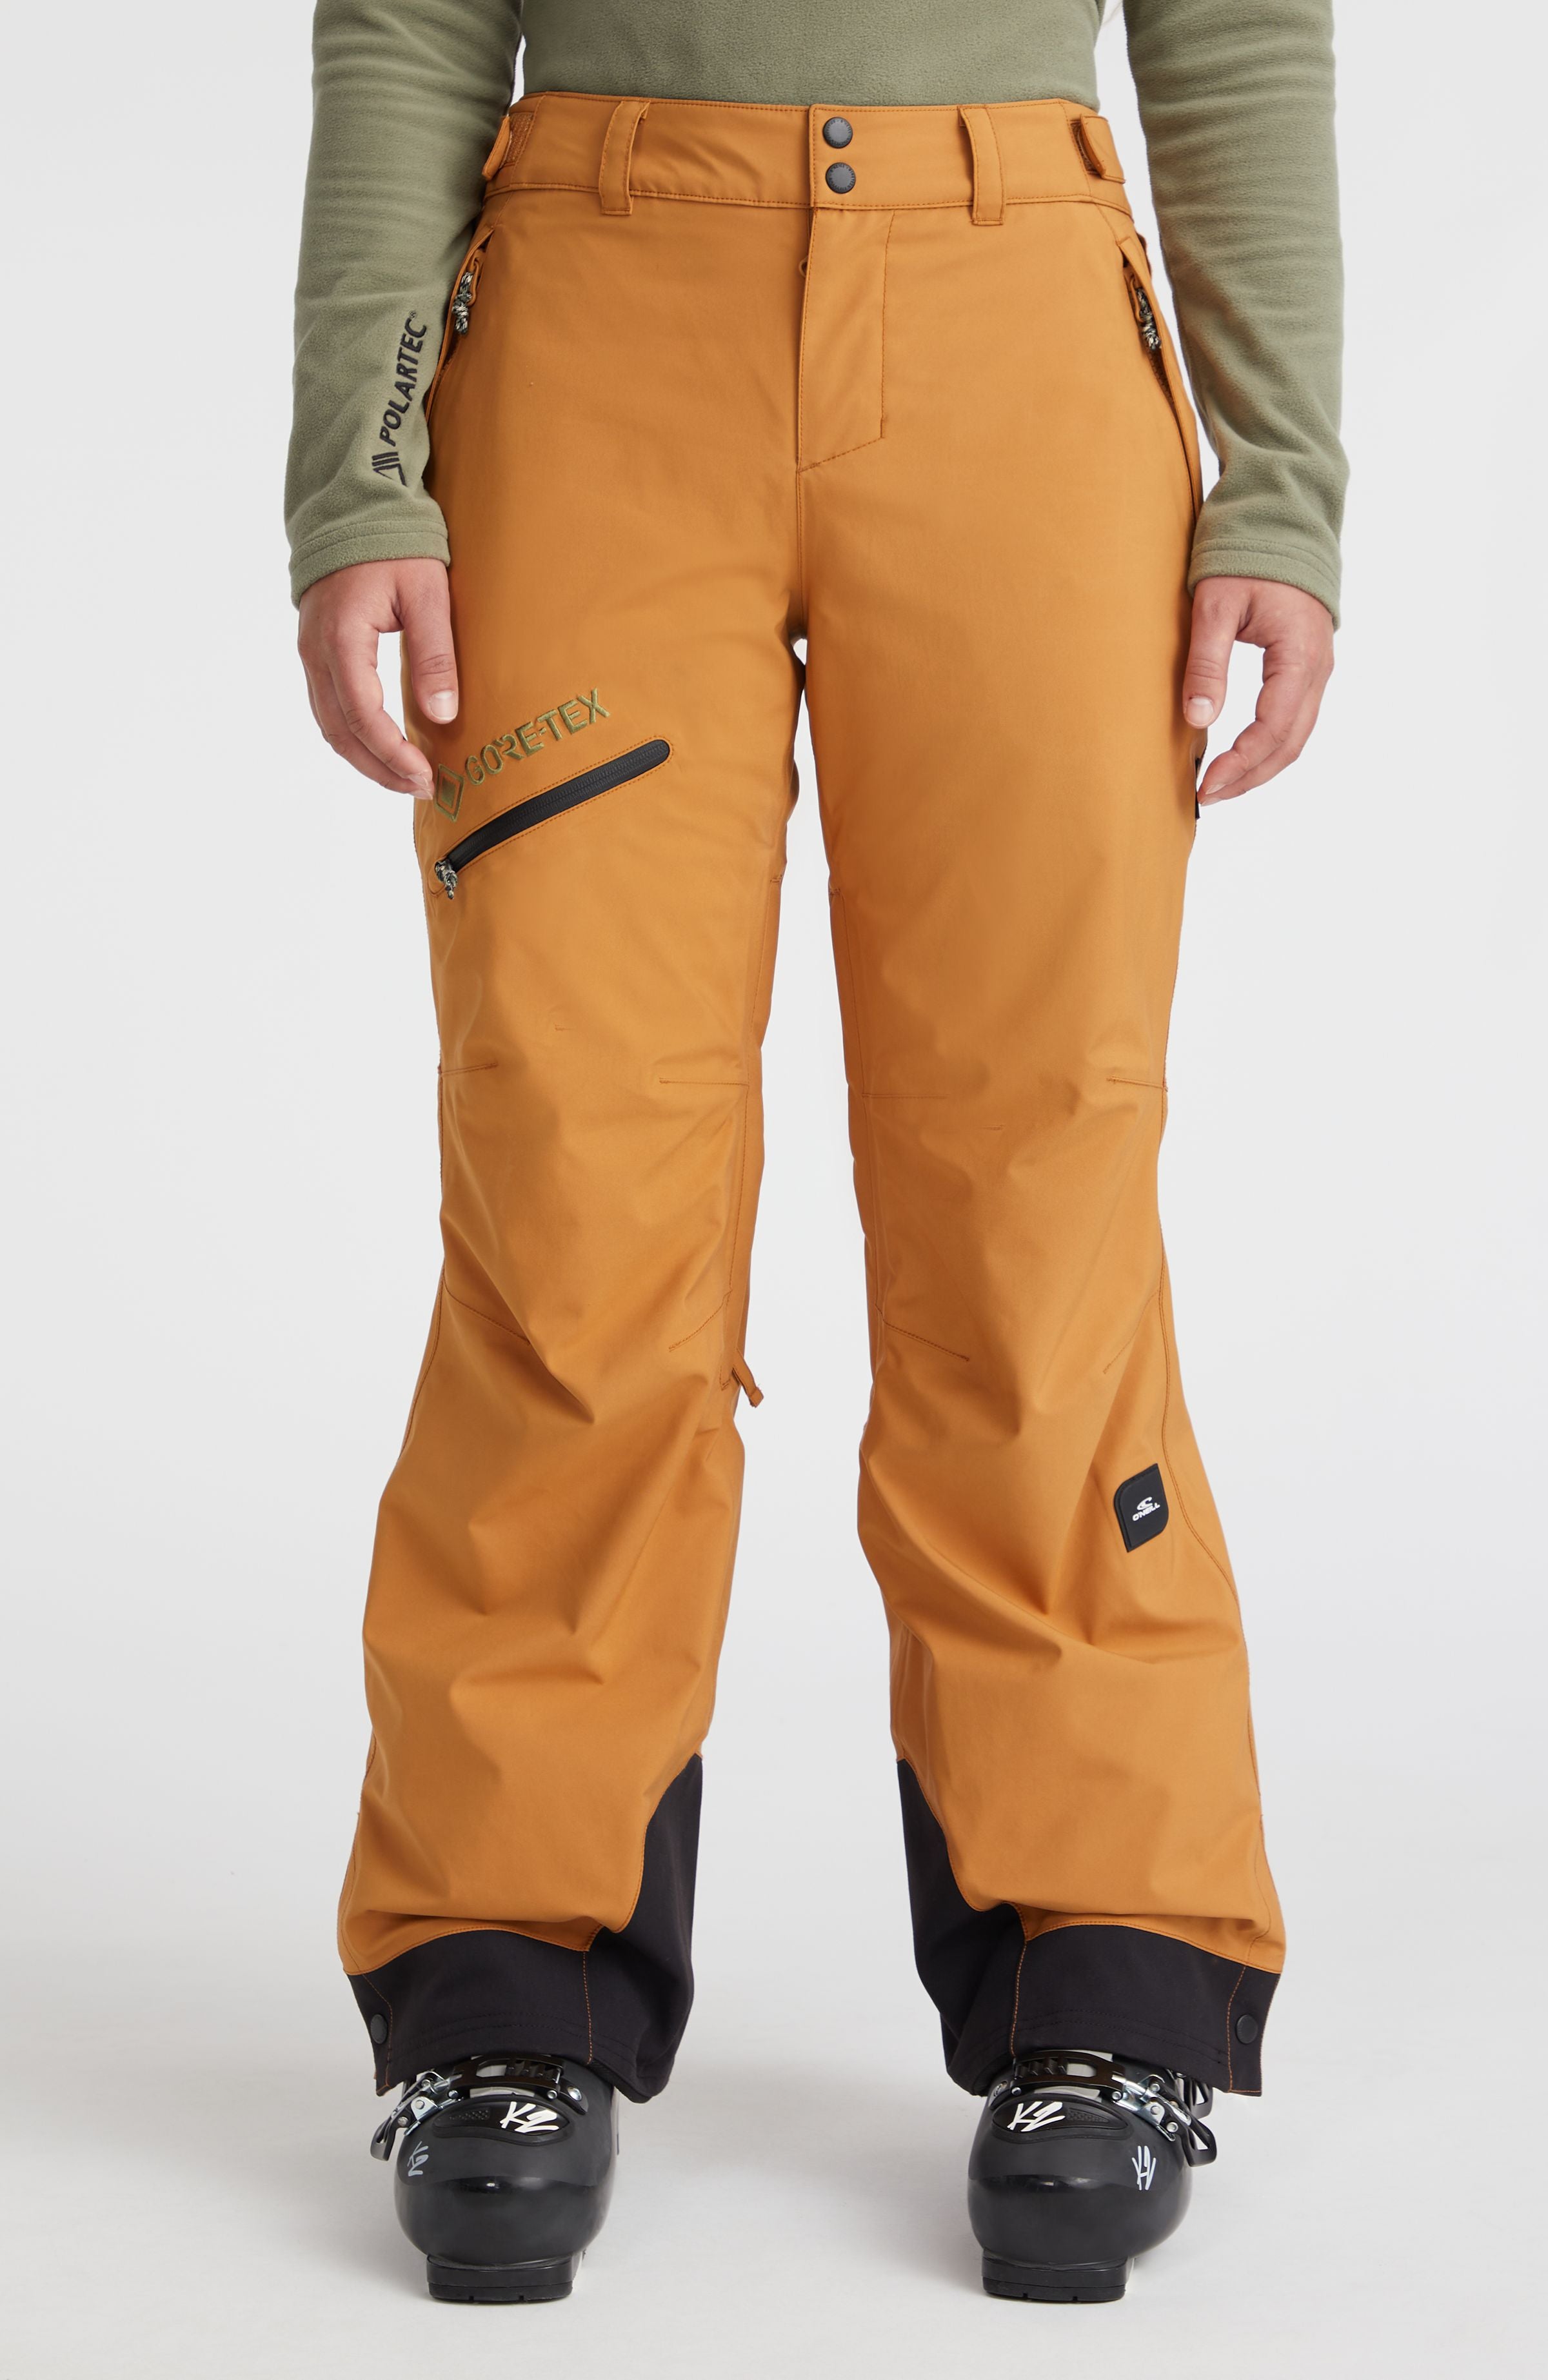 O'NEILL O'Neill GTX MADNESS - Pantalón de esquí hombre poison